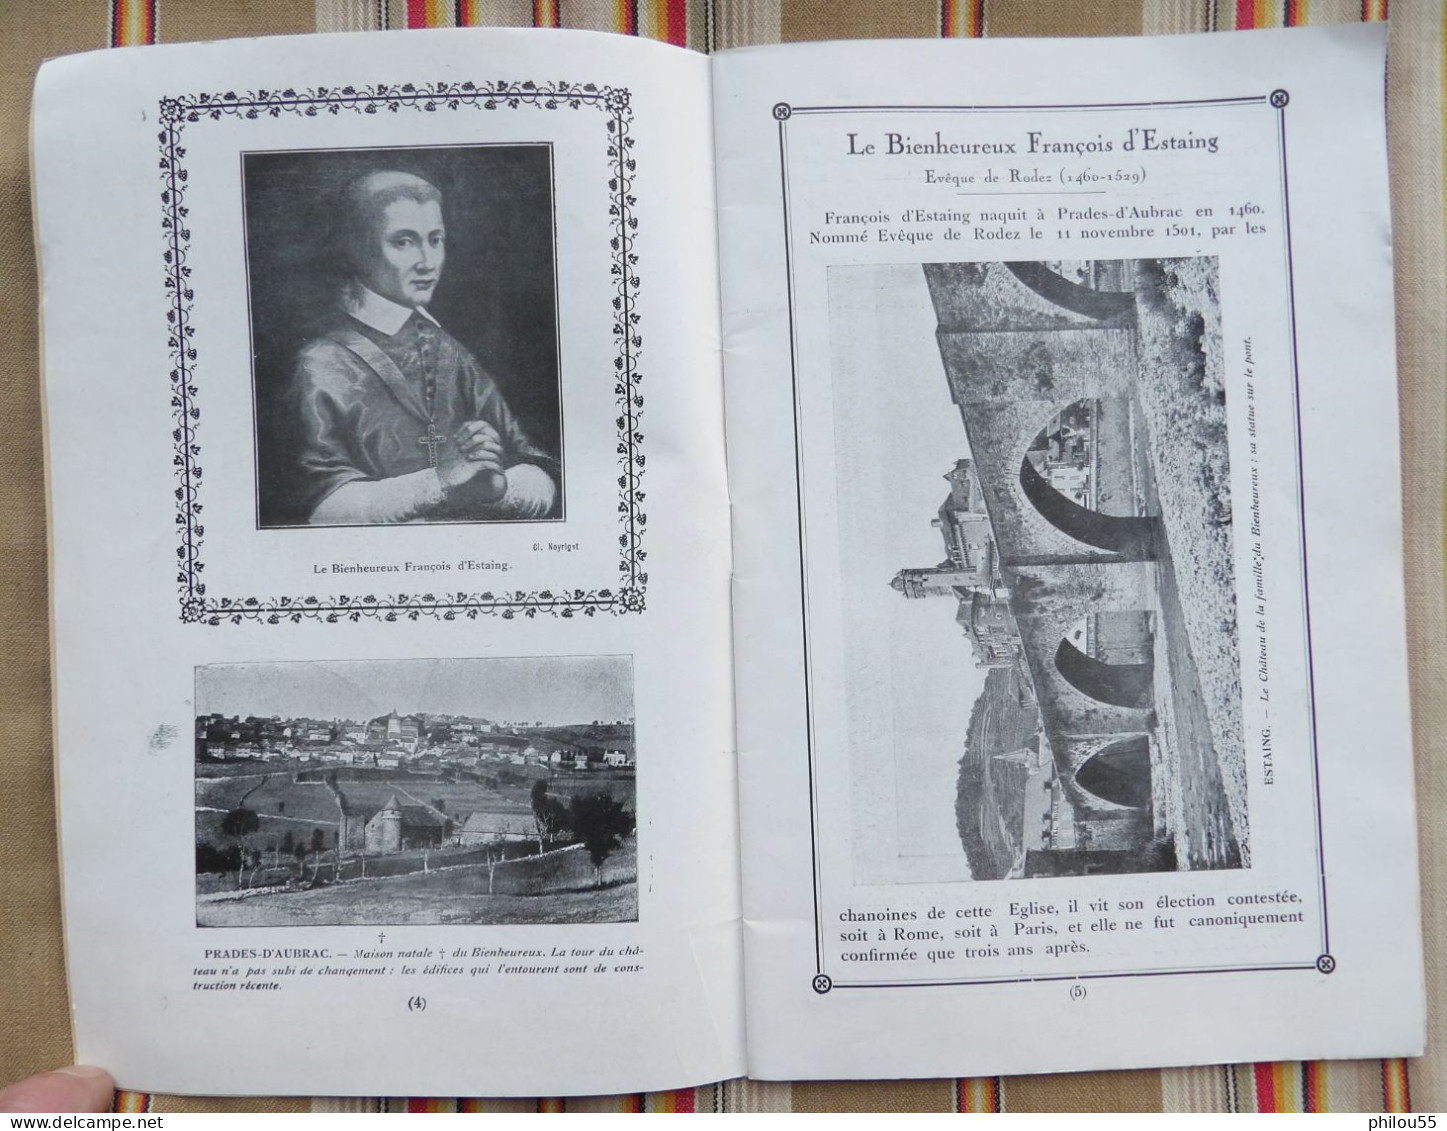 12 RODEZ  FETES du IVe Centenaire du Bx FRANCOIS D' ESTAING 1529 1929 + carte invitation Eveche de RODEZ